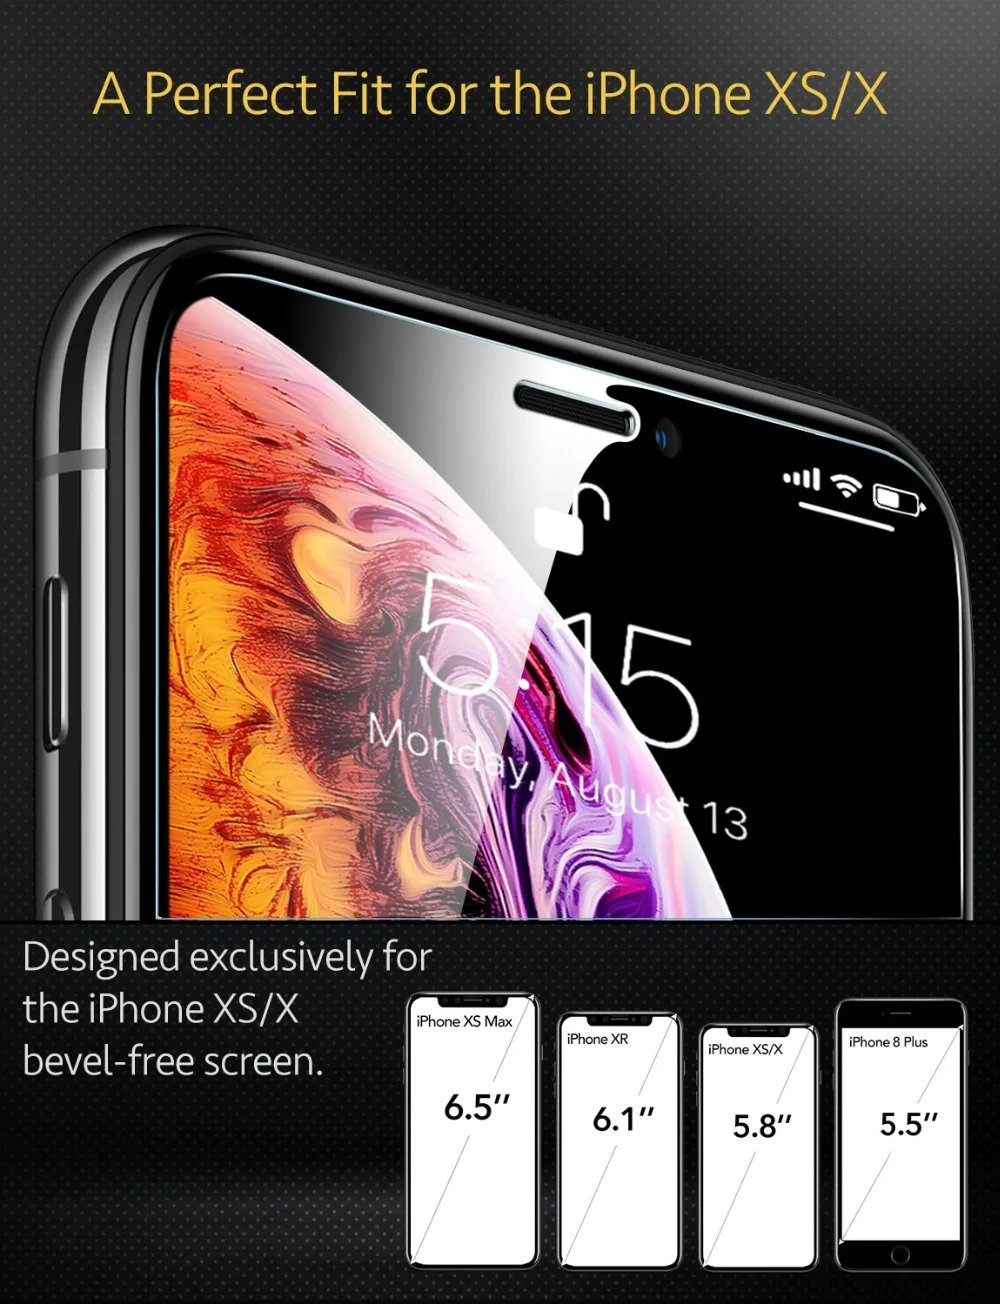 ESR закаленное стекло для iPhone XR 5X более прочная защитная пленка для экрана для iPhone XS жесткая Защитная стеклянная крышка для iPhone XS Max